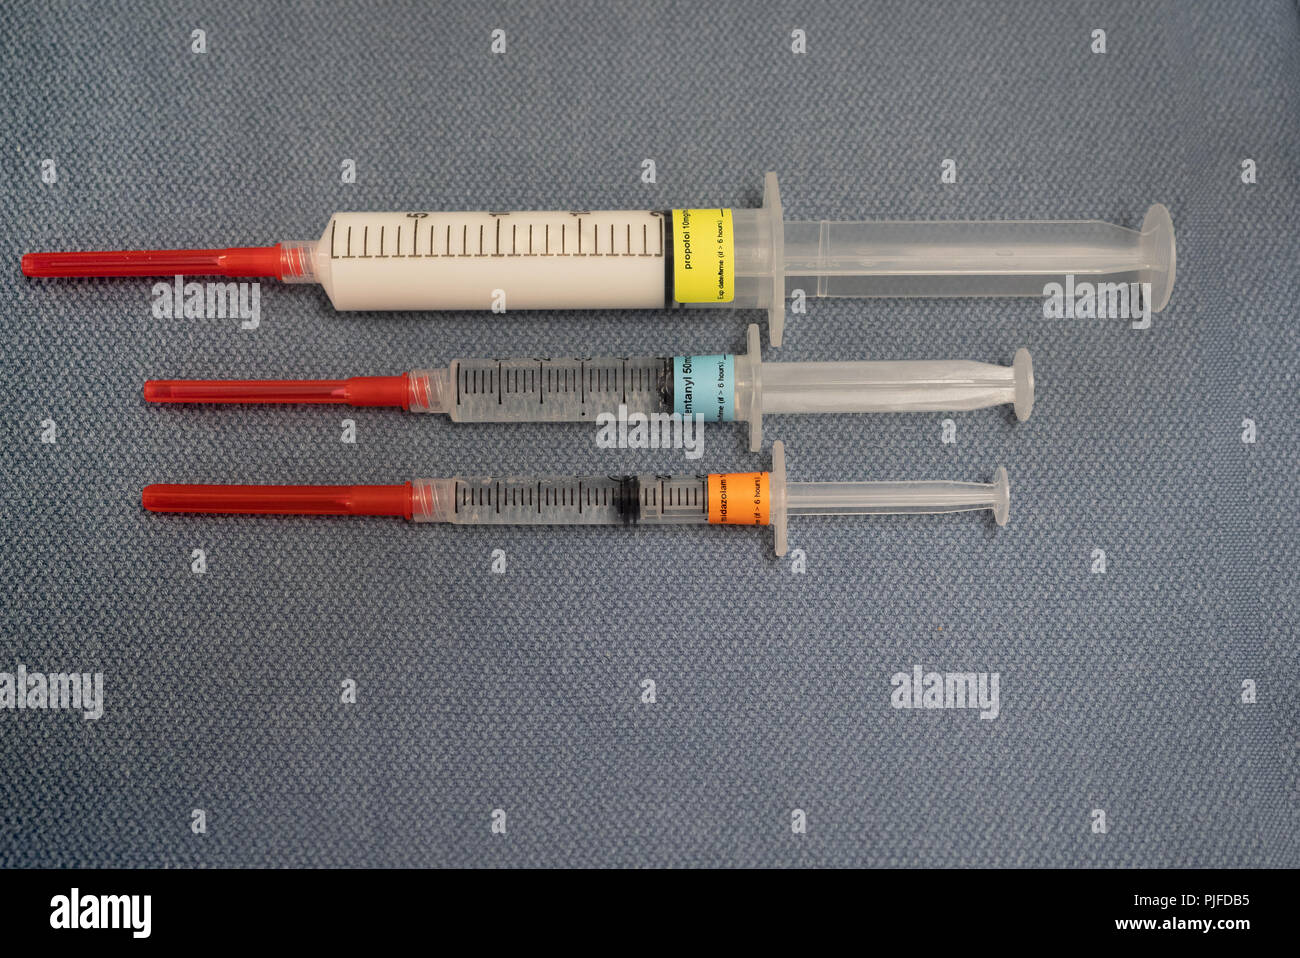 Tre marcato farmaci anestesia, propofol, fentanil e midazolam, su un grigio blu asciugamano da sopra. Foto Stock